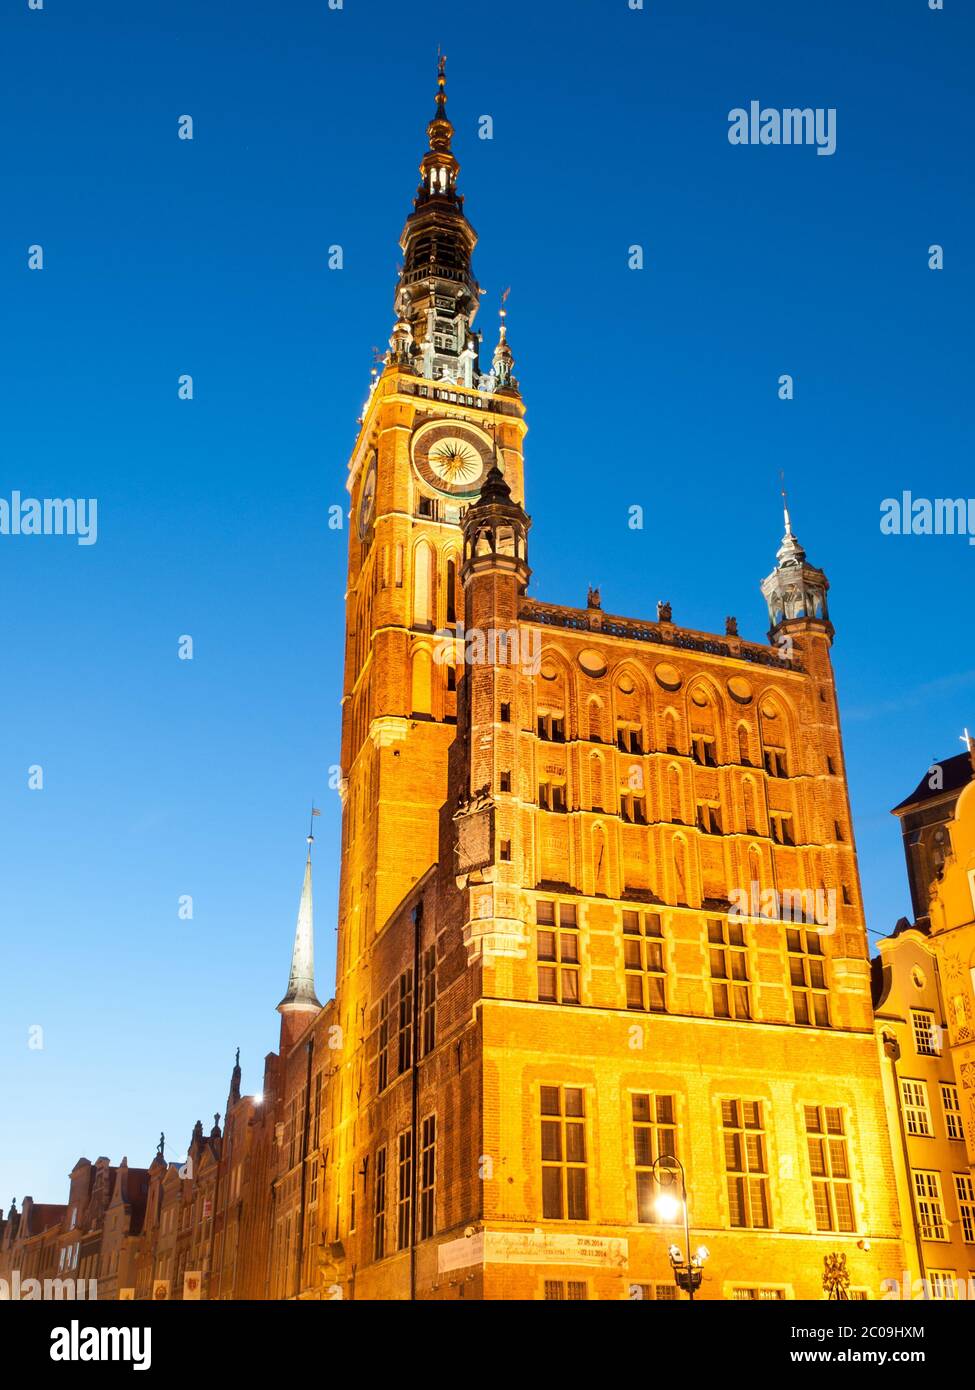 Beleuchtetes Rathaus in der Altstadt von Danzig, Polen. Nachtaufnahme des schönen barocken Uhrturms des Danziger Rathauses. Stockfoto